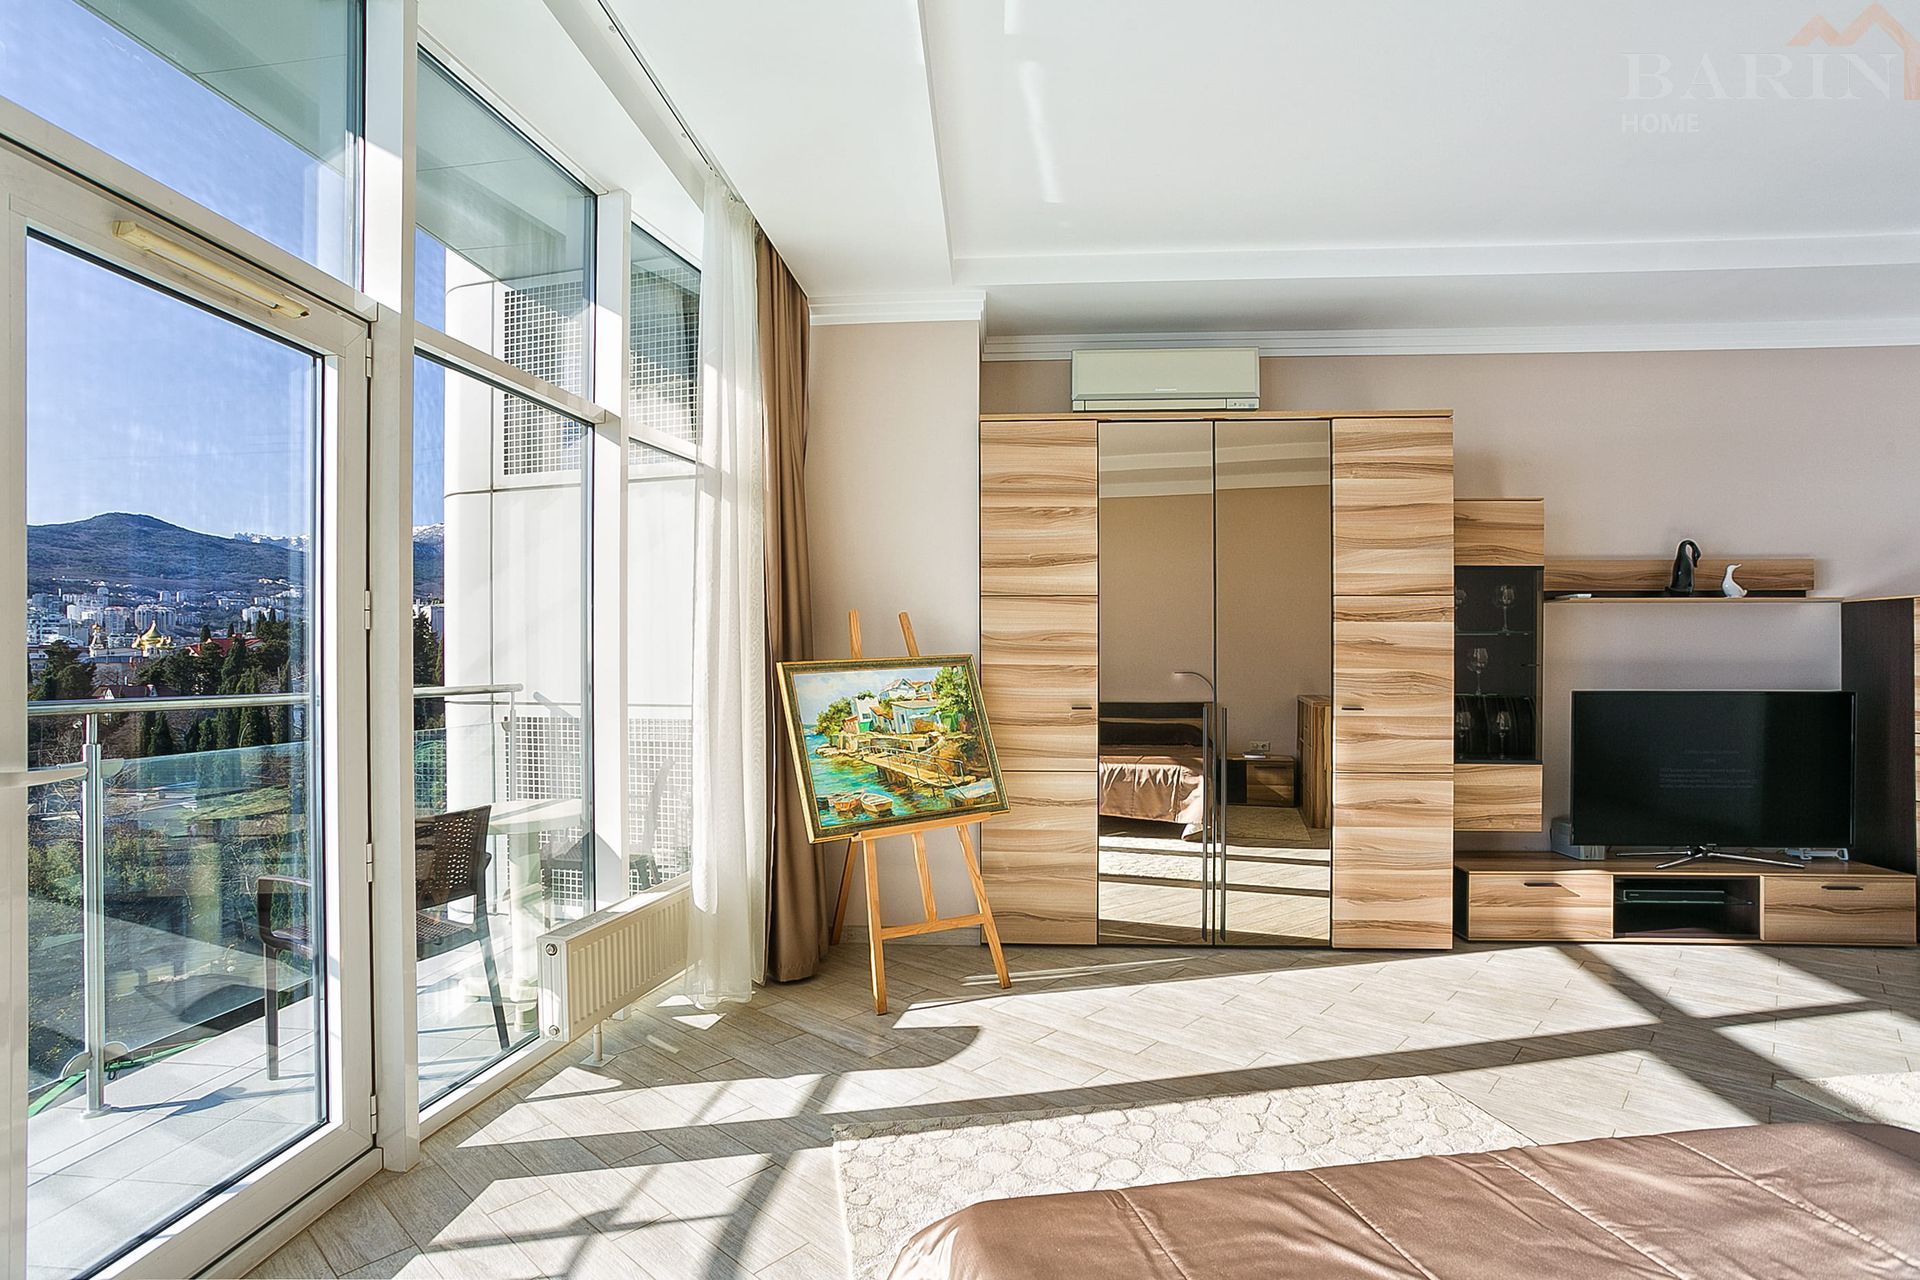 Продаётся видовая 1-к квартира в Комплексе Премиум-класса «Бригантина». Площадь 66 кв.м.